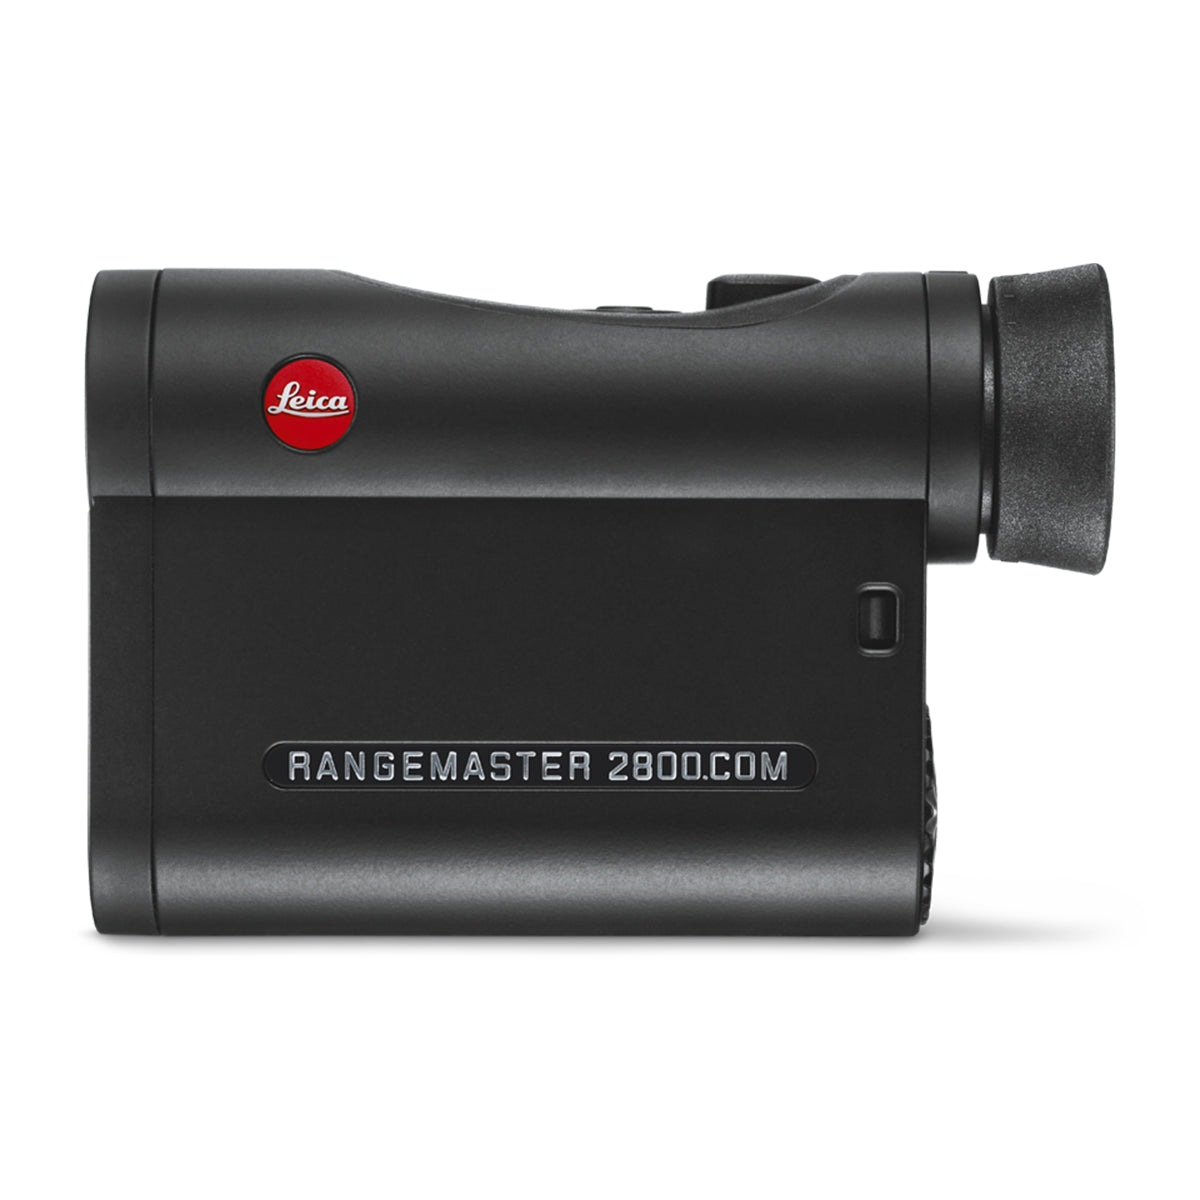 Leica Rangemaster CRF 2800.COM Rangefinder in Leica Rangemaster CRF 2800.COM Rangefinder by Leica | Optics - goHUNT Shop by GOHUNT | Leica - GOHUNT Shop